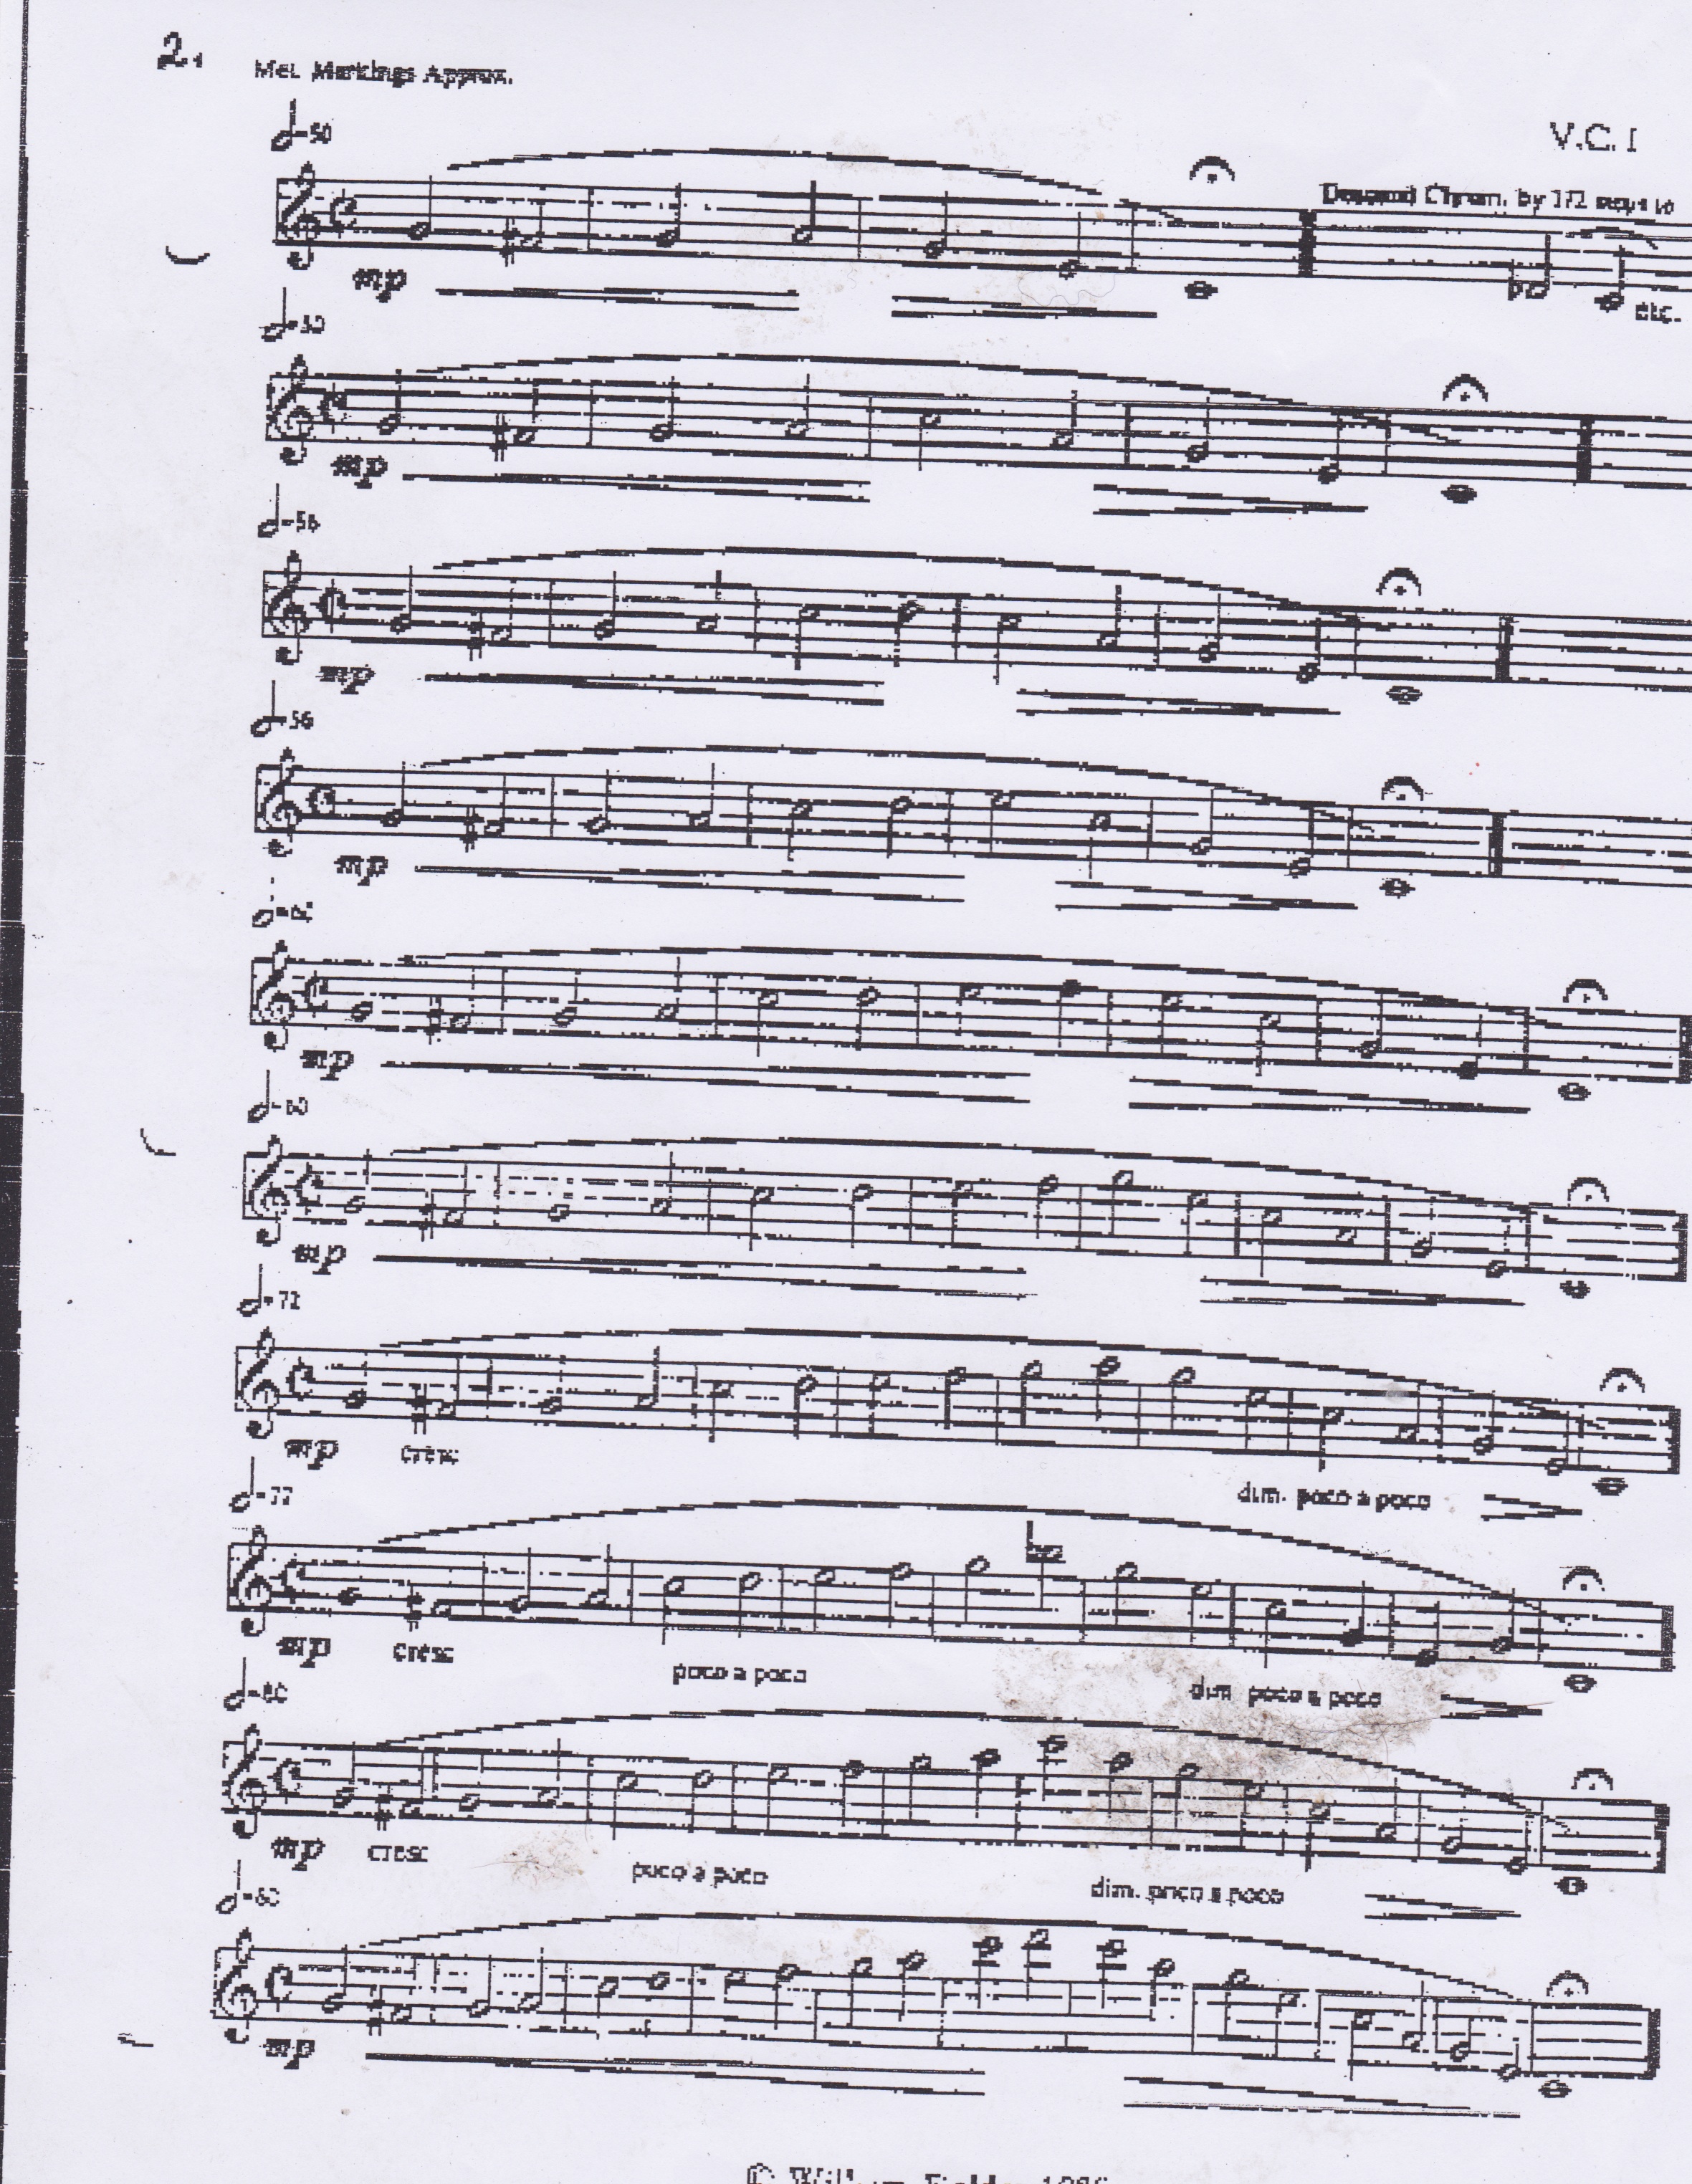 cichowicz flow studies trumpet pdf